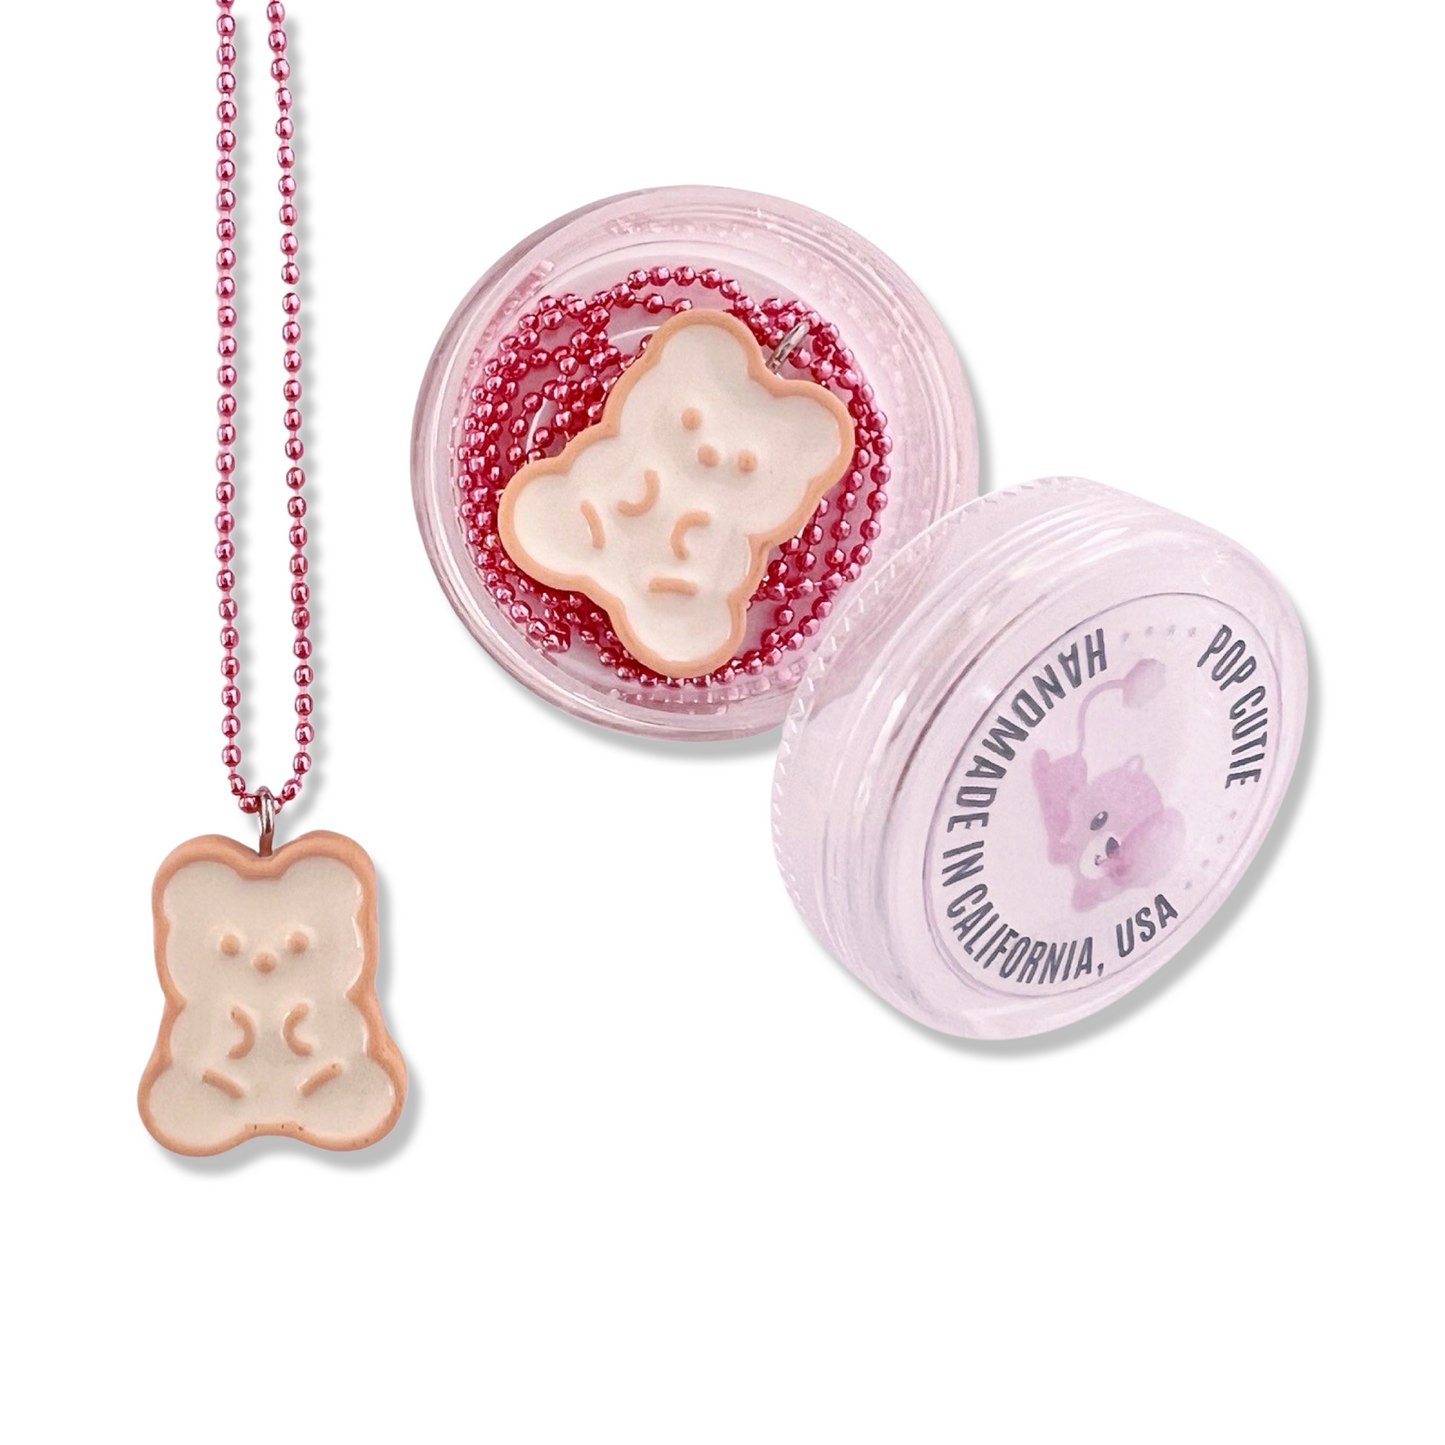 Pop Cutie Bear Biscuit Necklace - Handmade